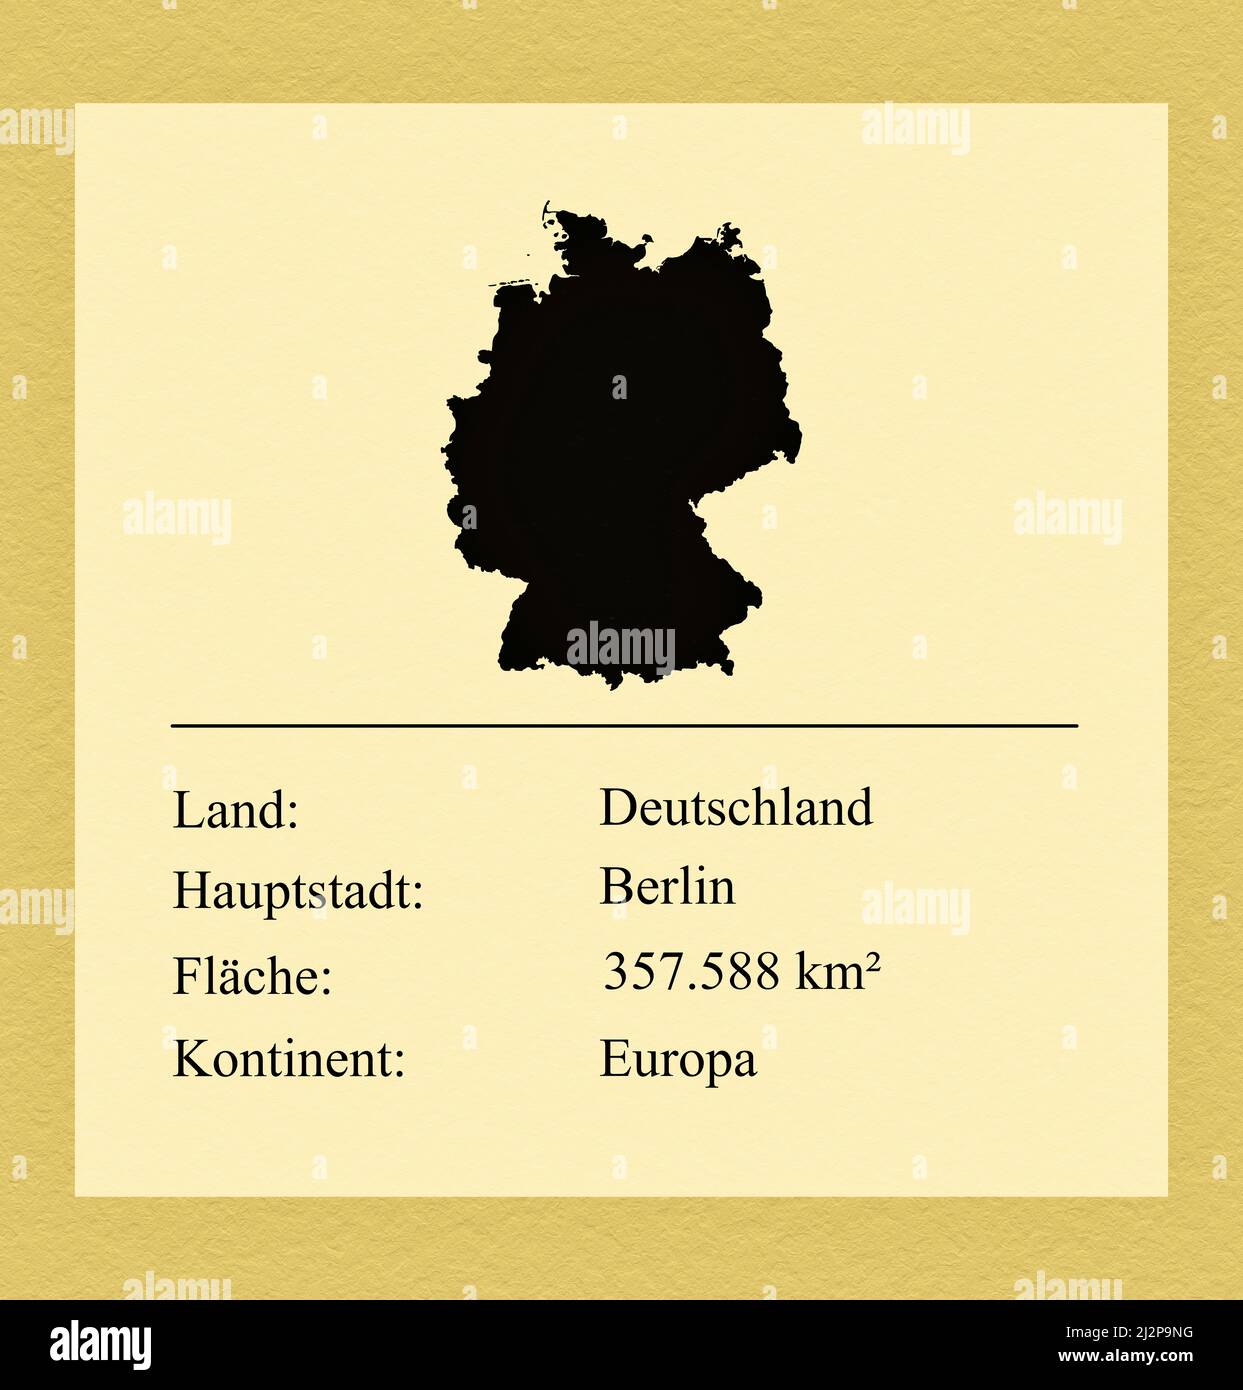 Umrisse des Landes Deutschland, darunter ein kleiner Steckbrief mit Ländernamen, Hauptstadt, Fläche und Kontinent Stock Photo